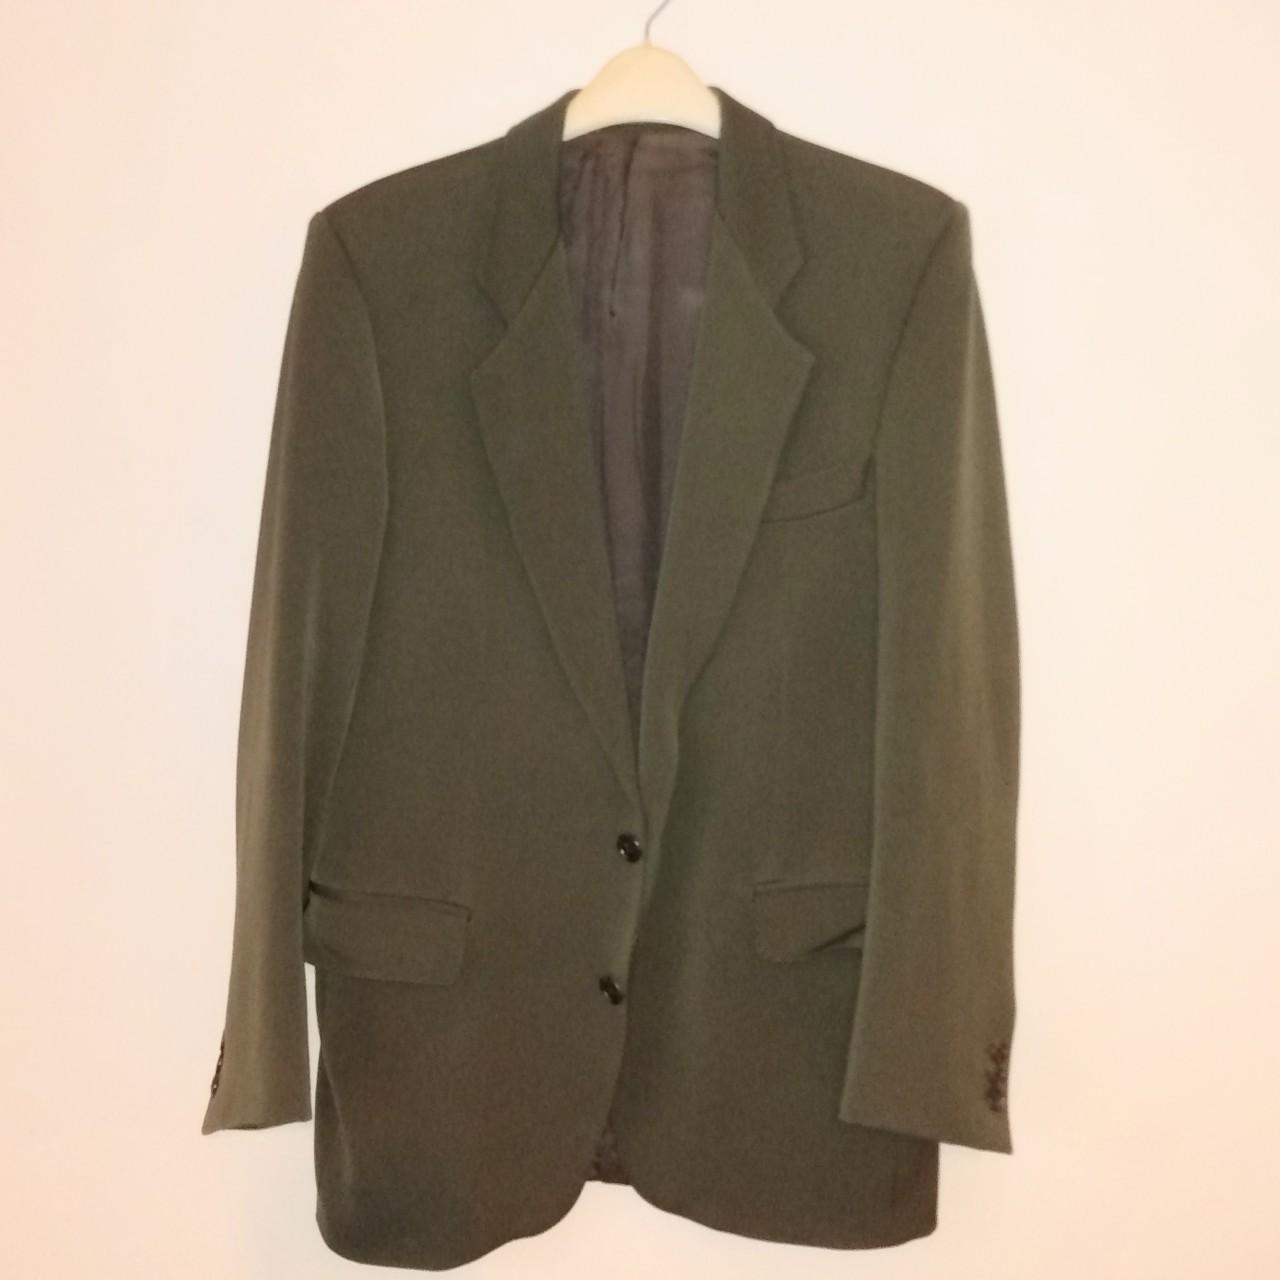 Men's Green and Khaki Jacket | Depop